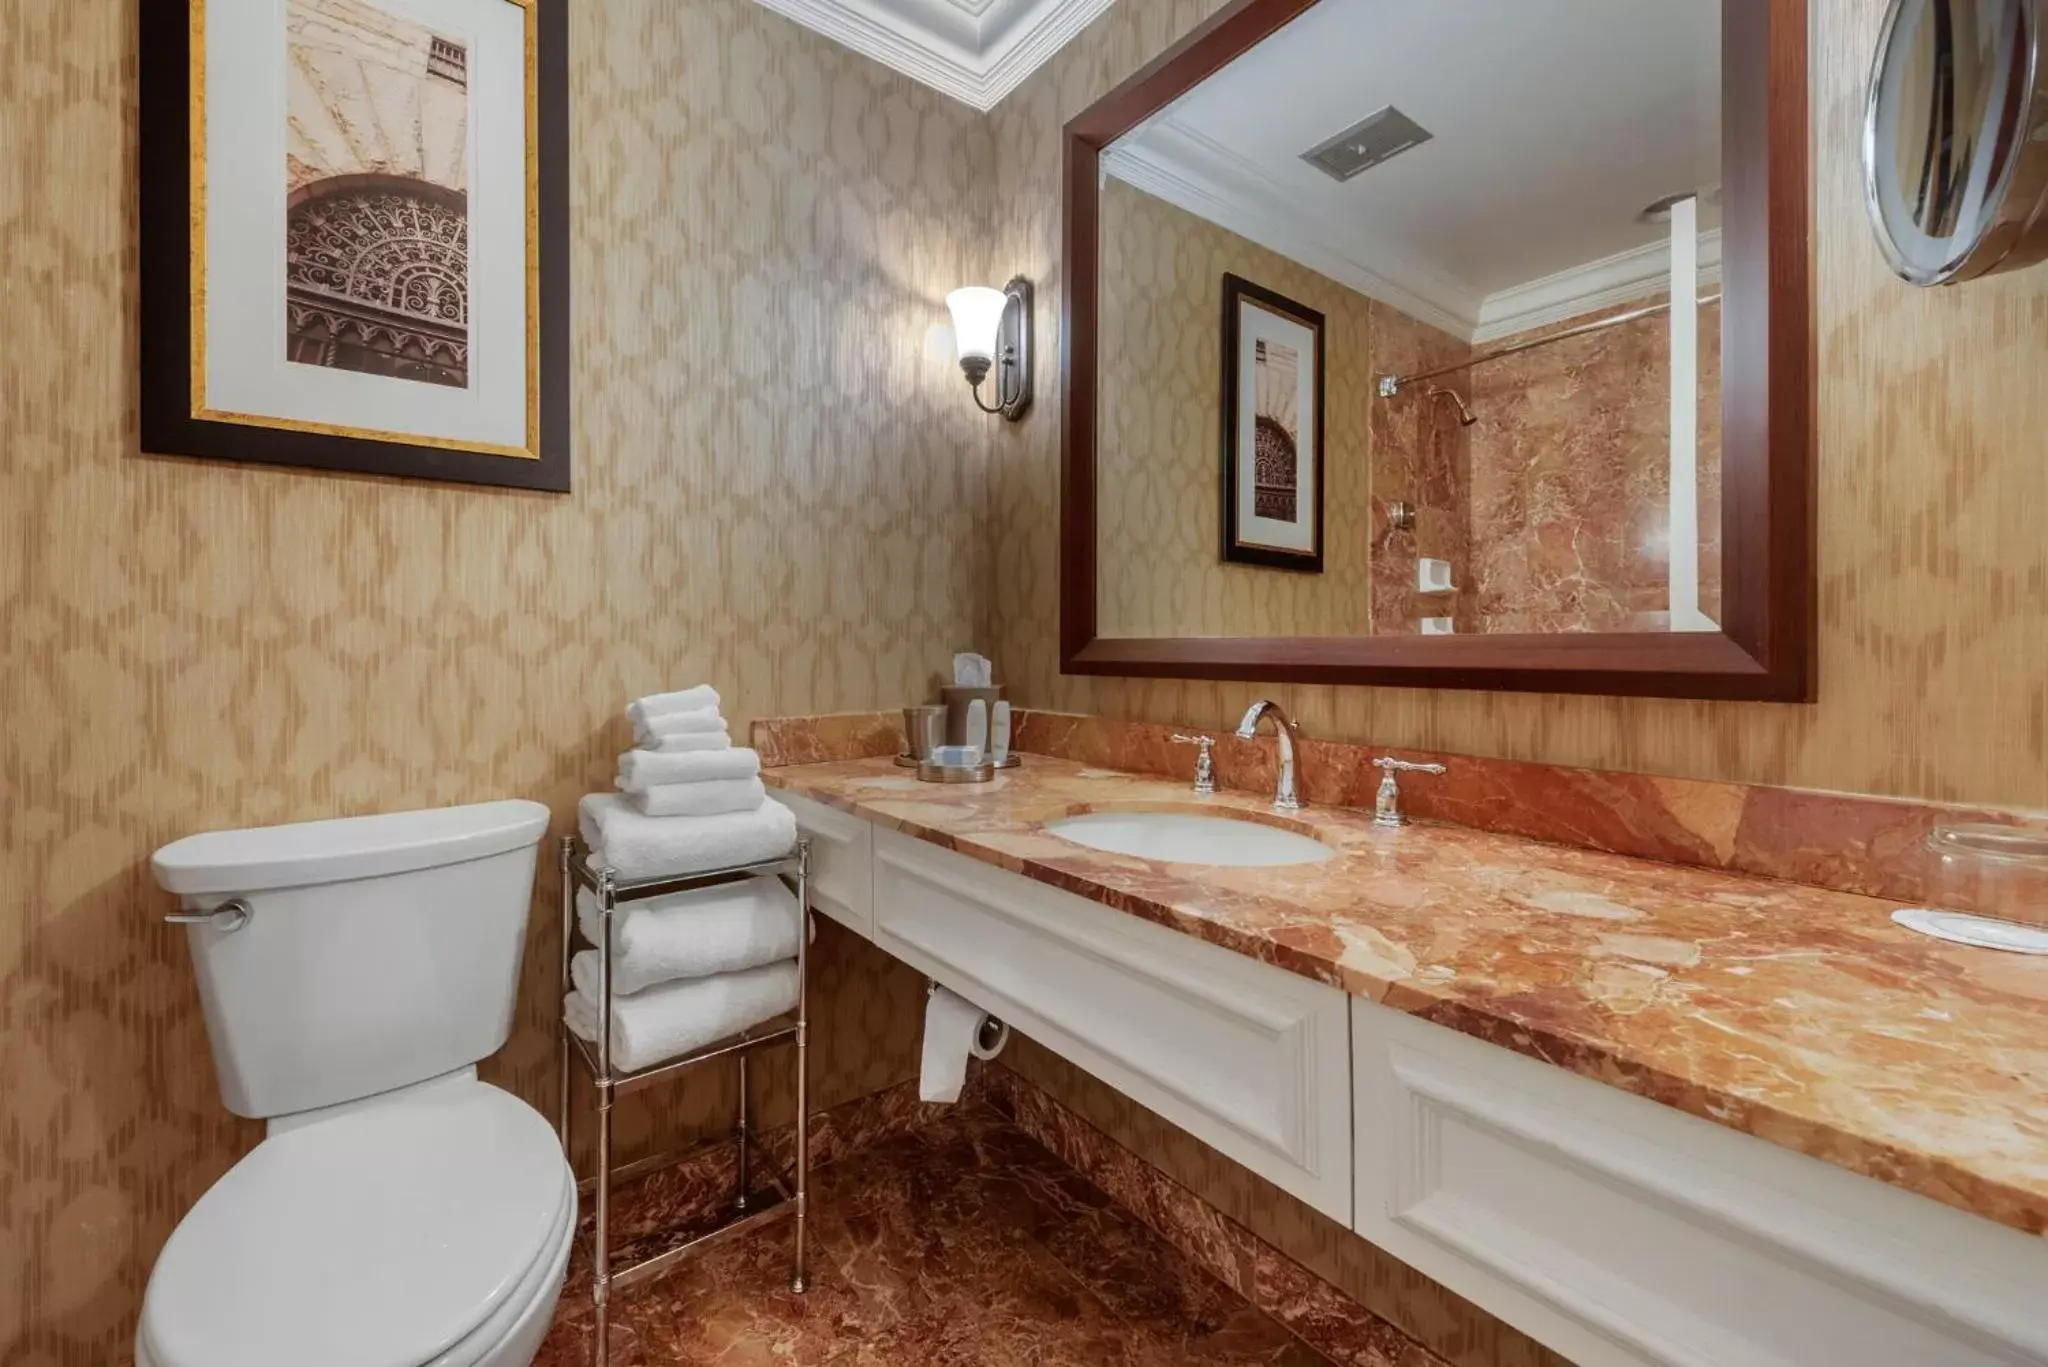 Bathroom in Omni William Penn Hotel